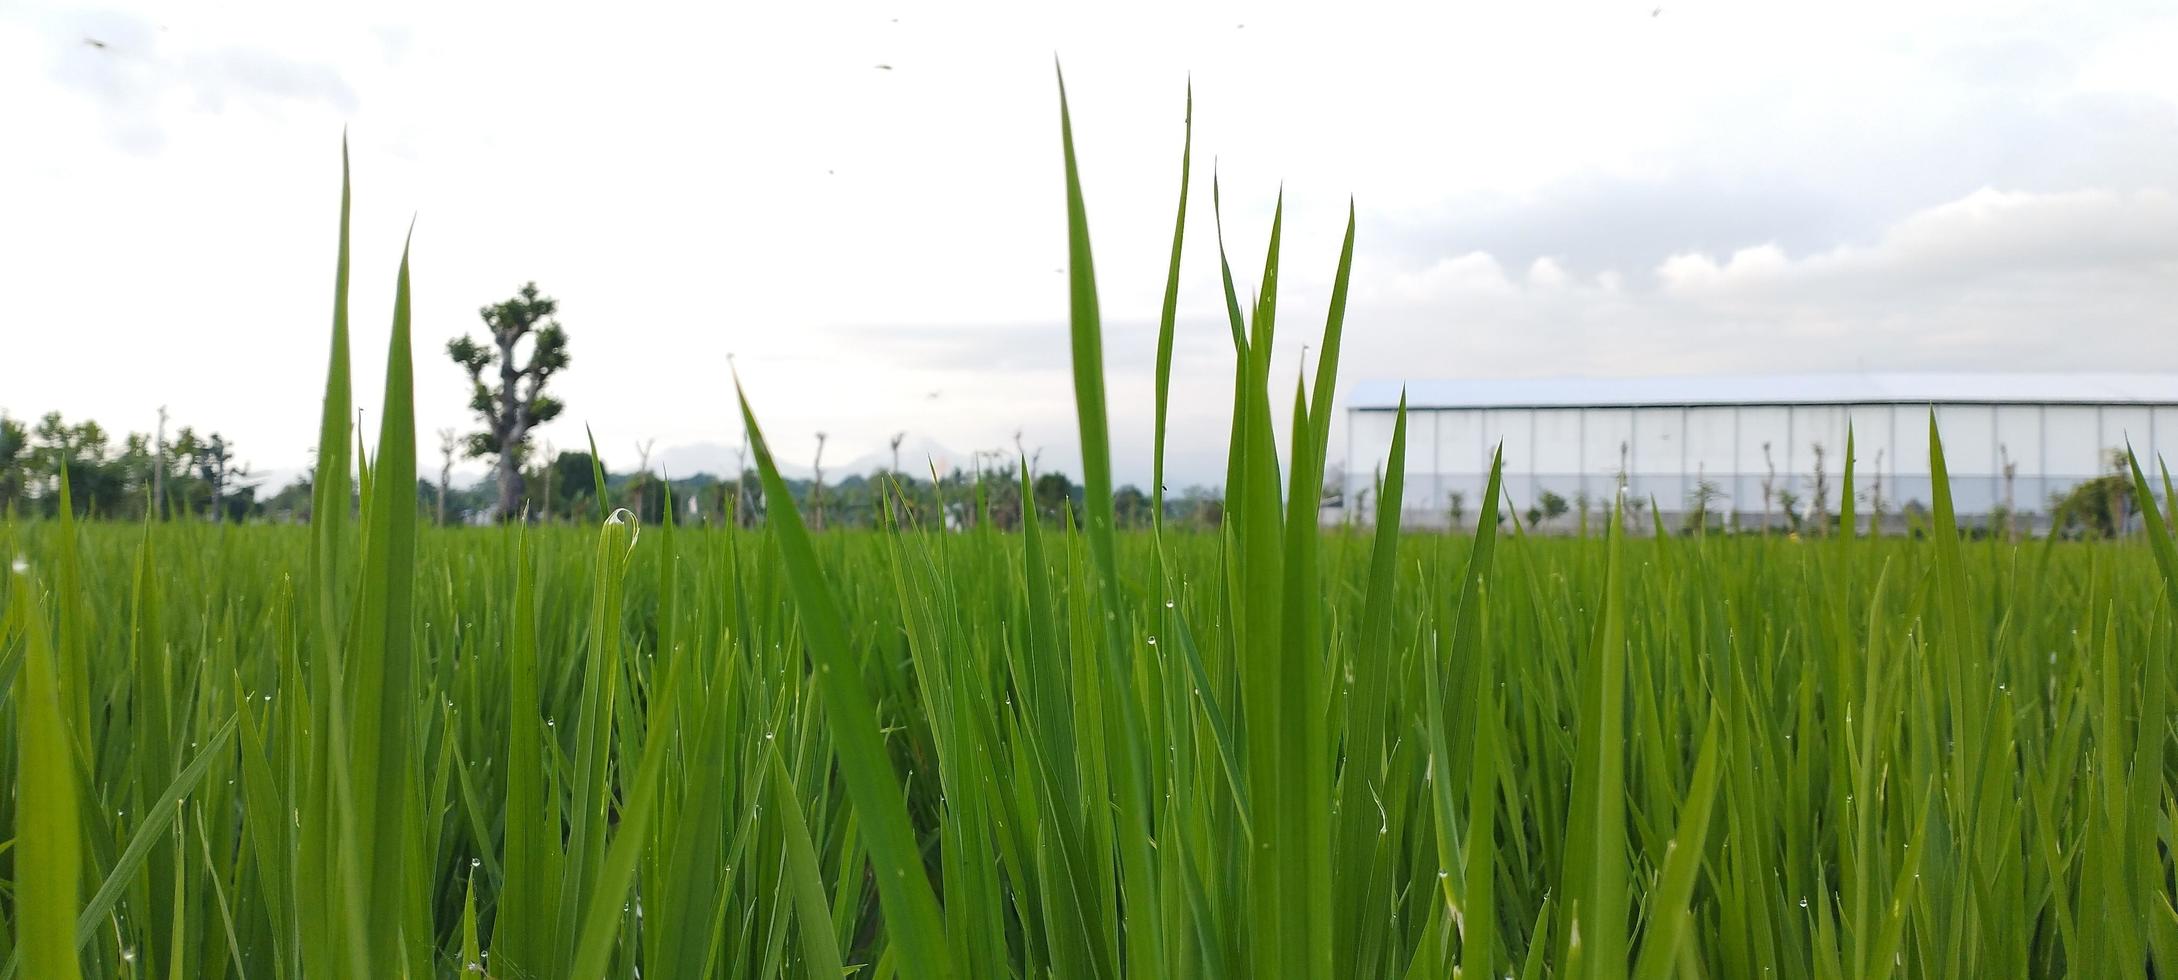 groen rijst- planten met plassen van water in hen kijken mooi, naar een breed uitgestrektheid foto